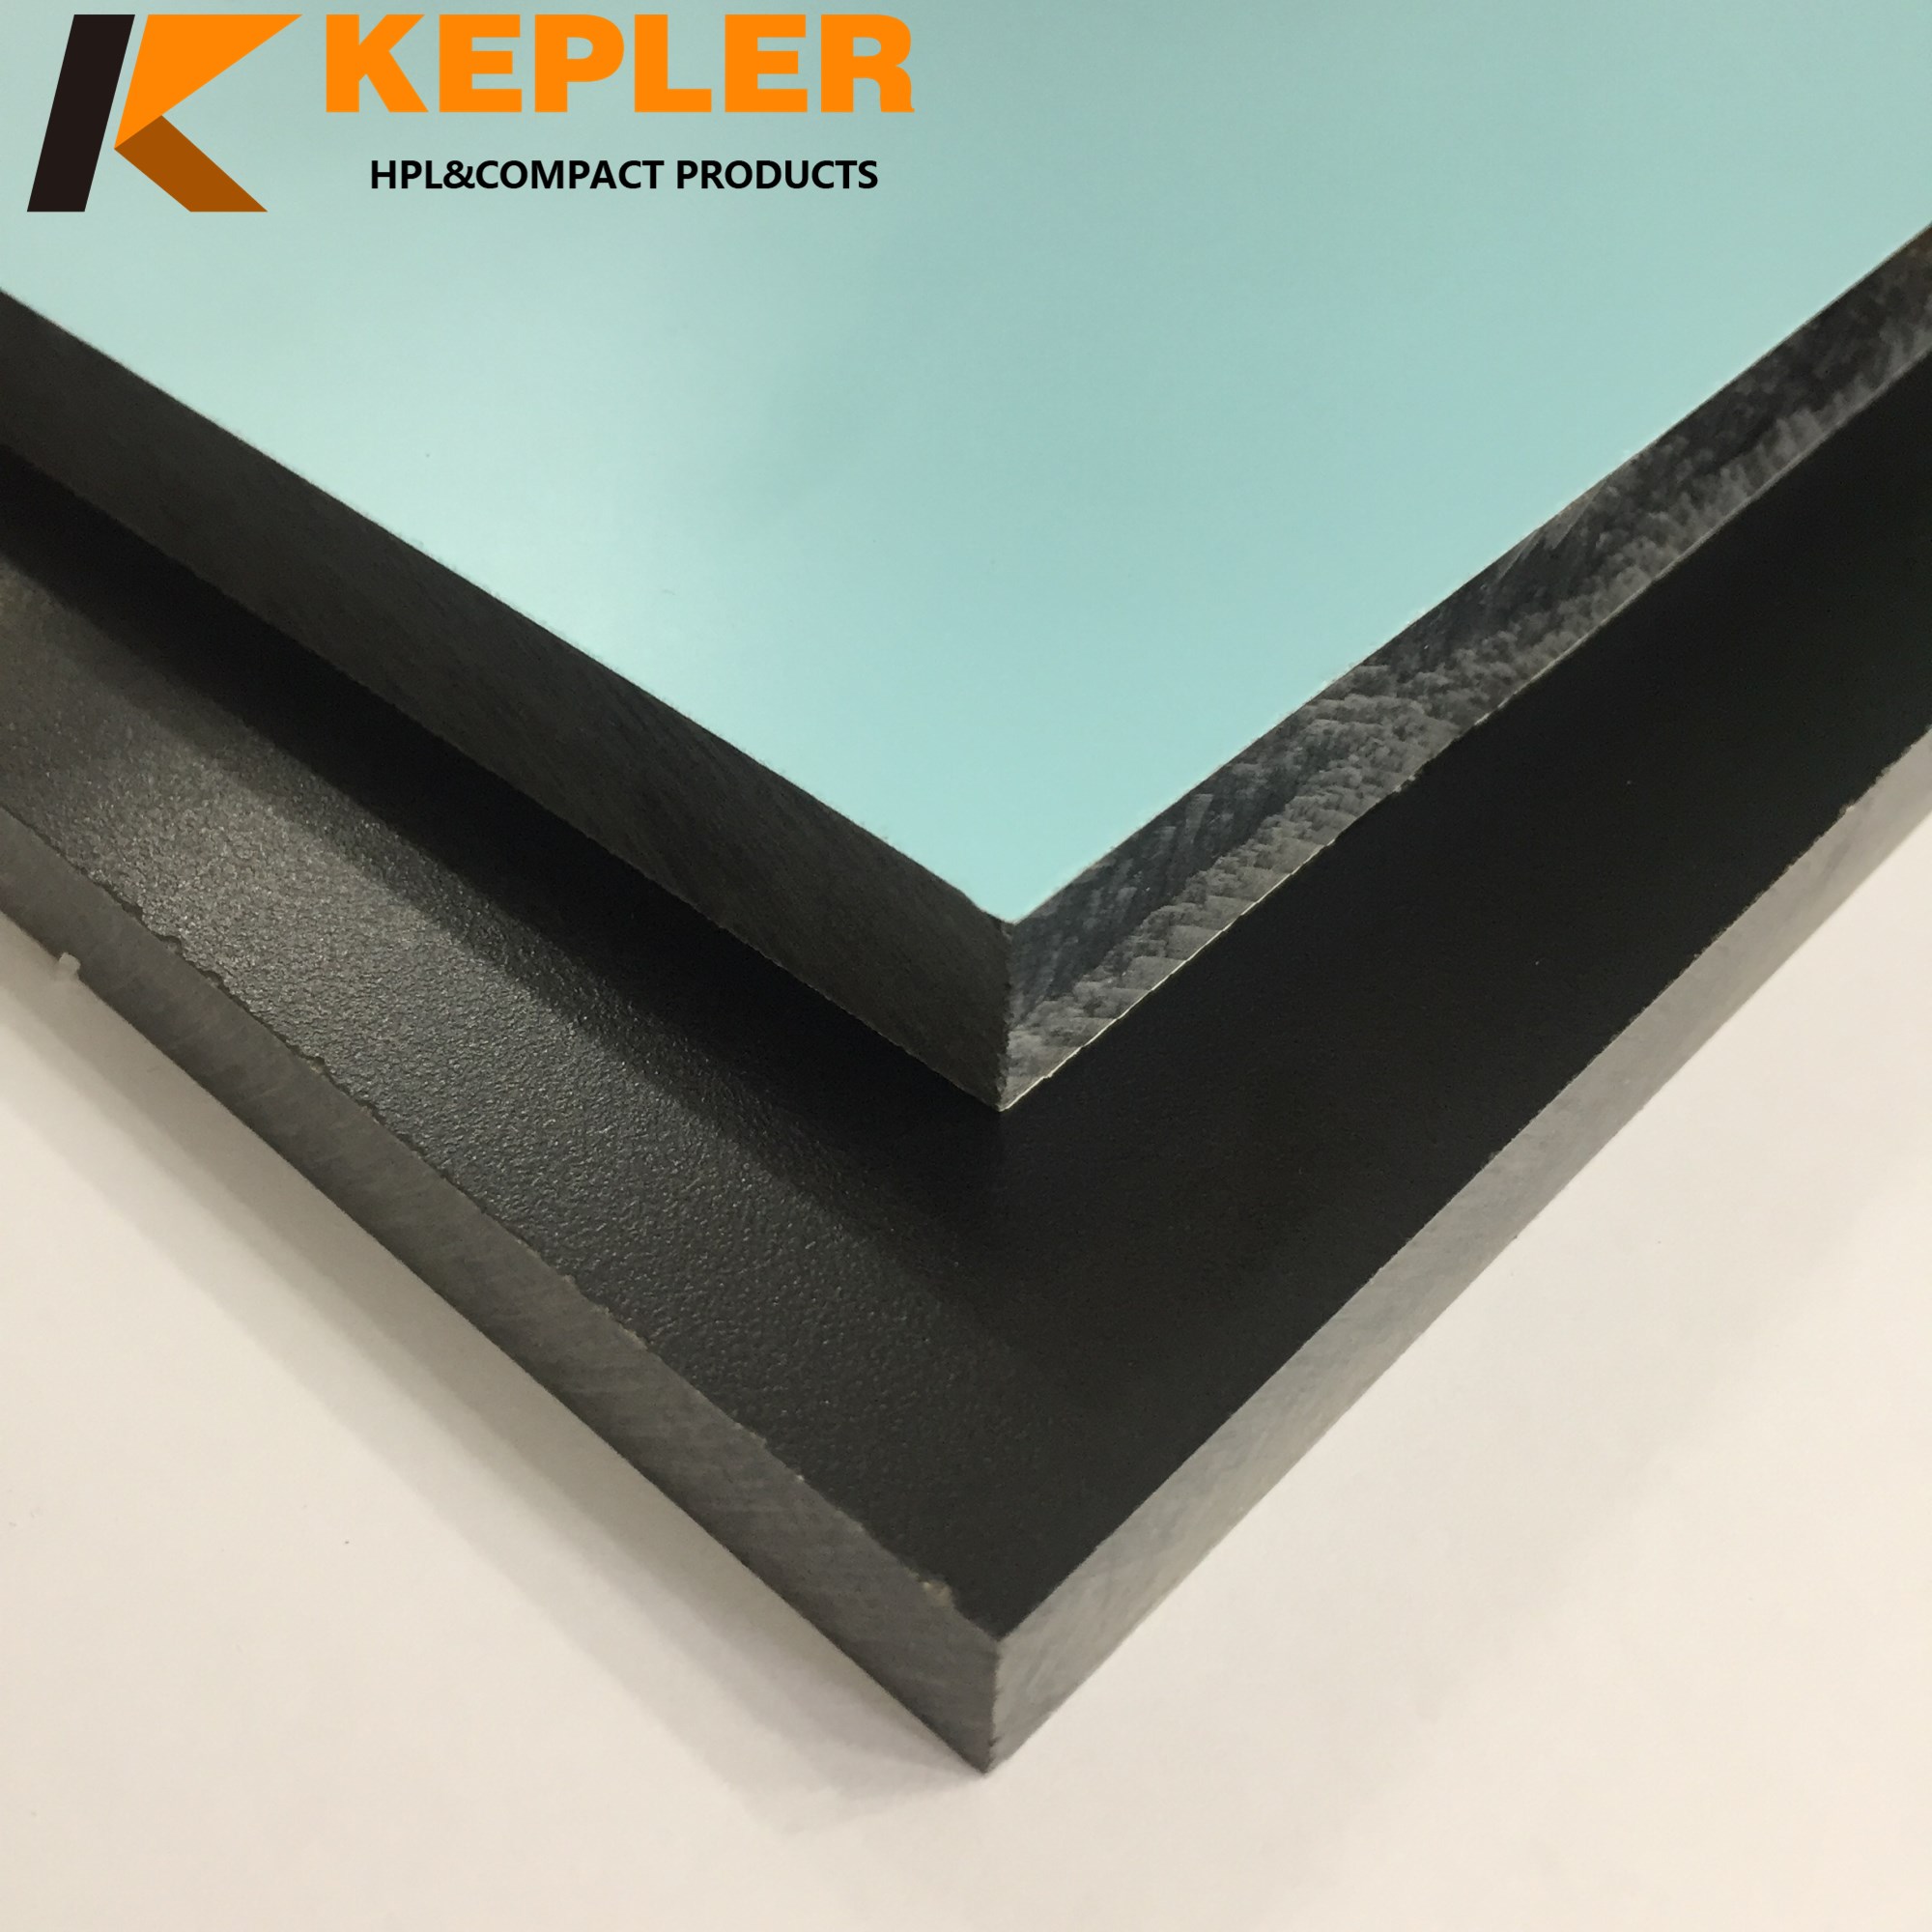 Kepler 12.7mm chemical resistant compact hpl labtop panel manufacturer